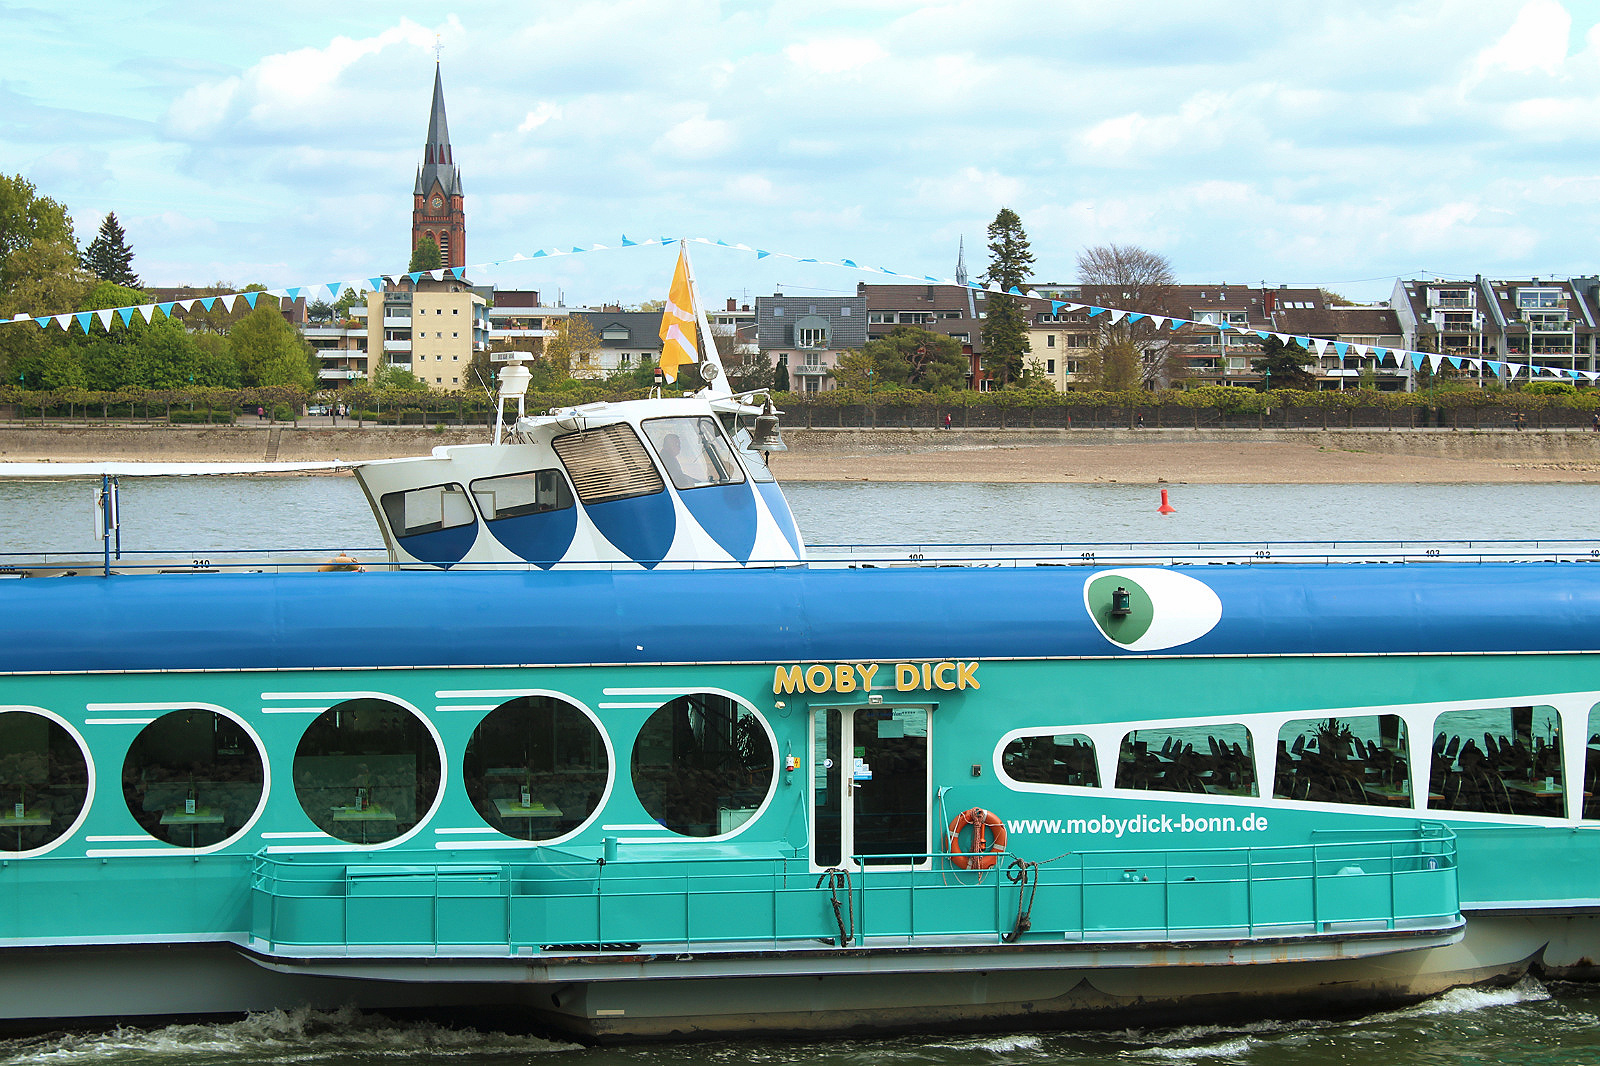 Bonn-Moby Dick